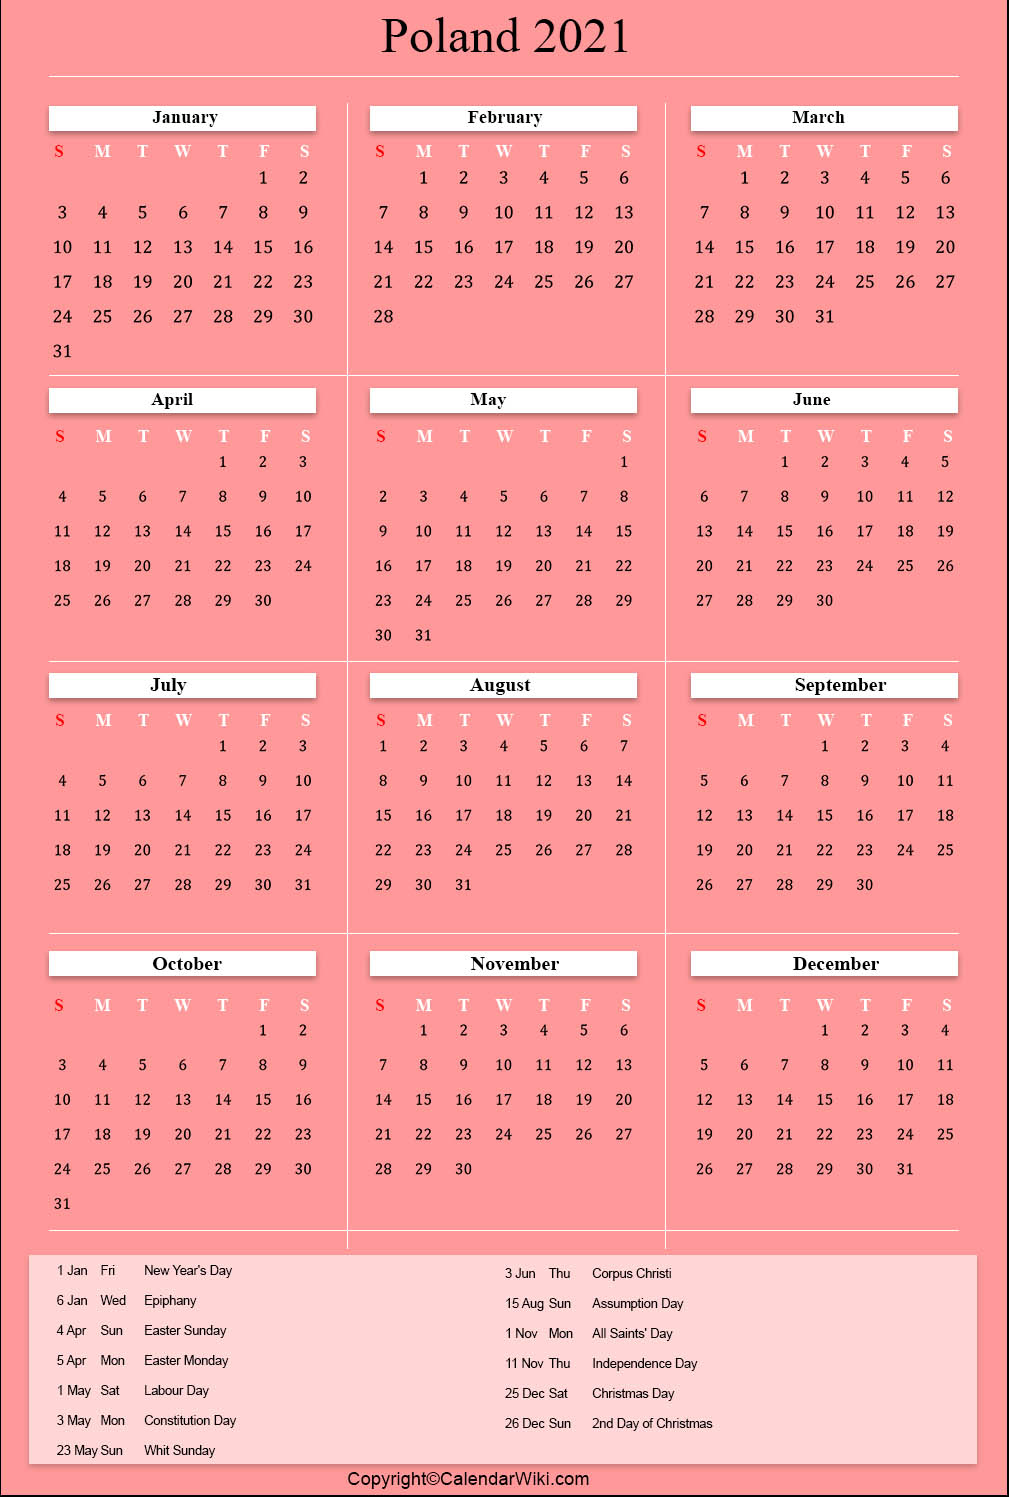 printable-poland-calendar-2021-with-holidays-public-holidays